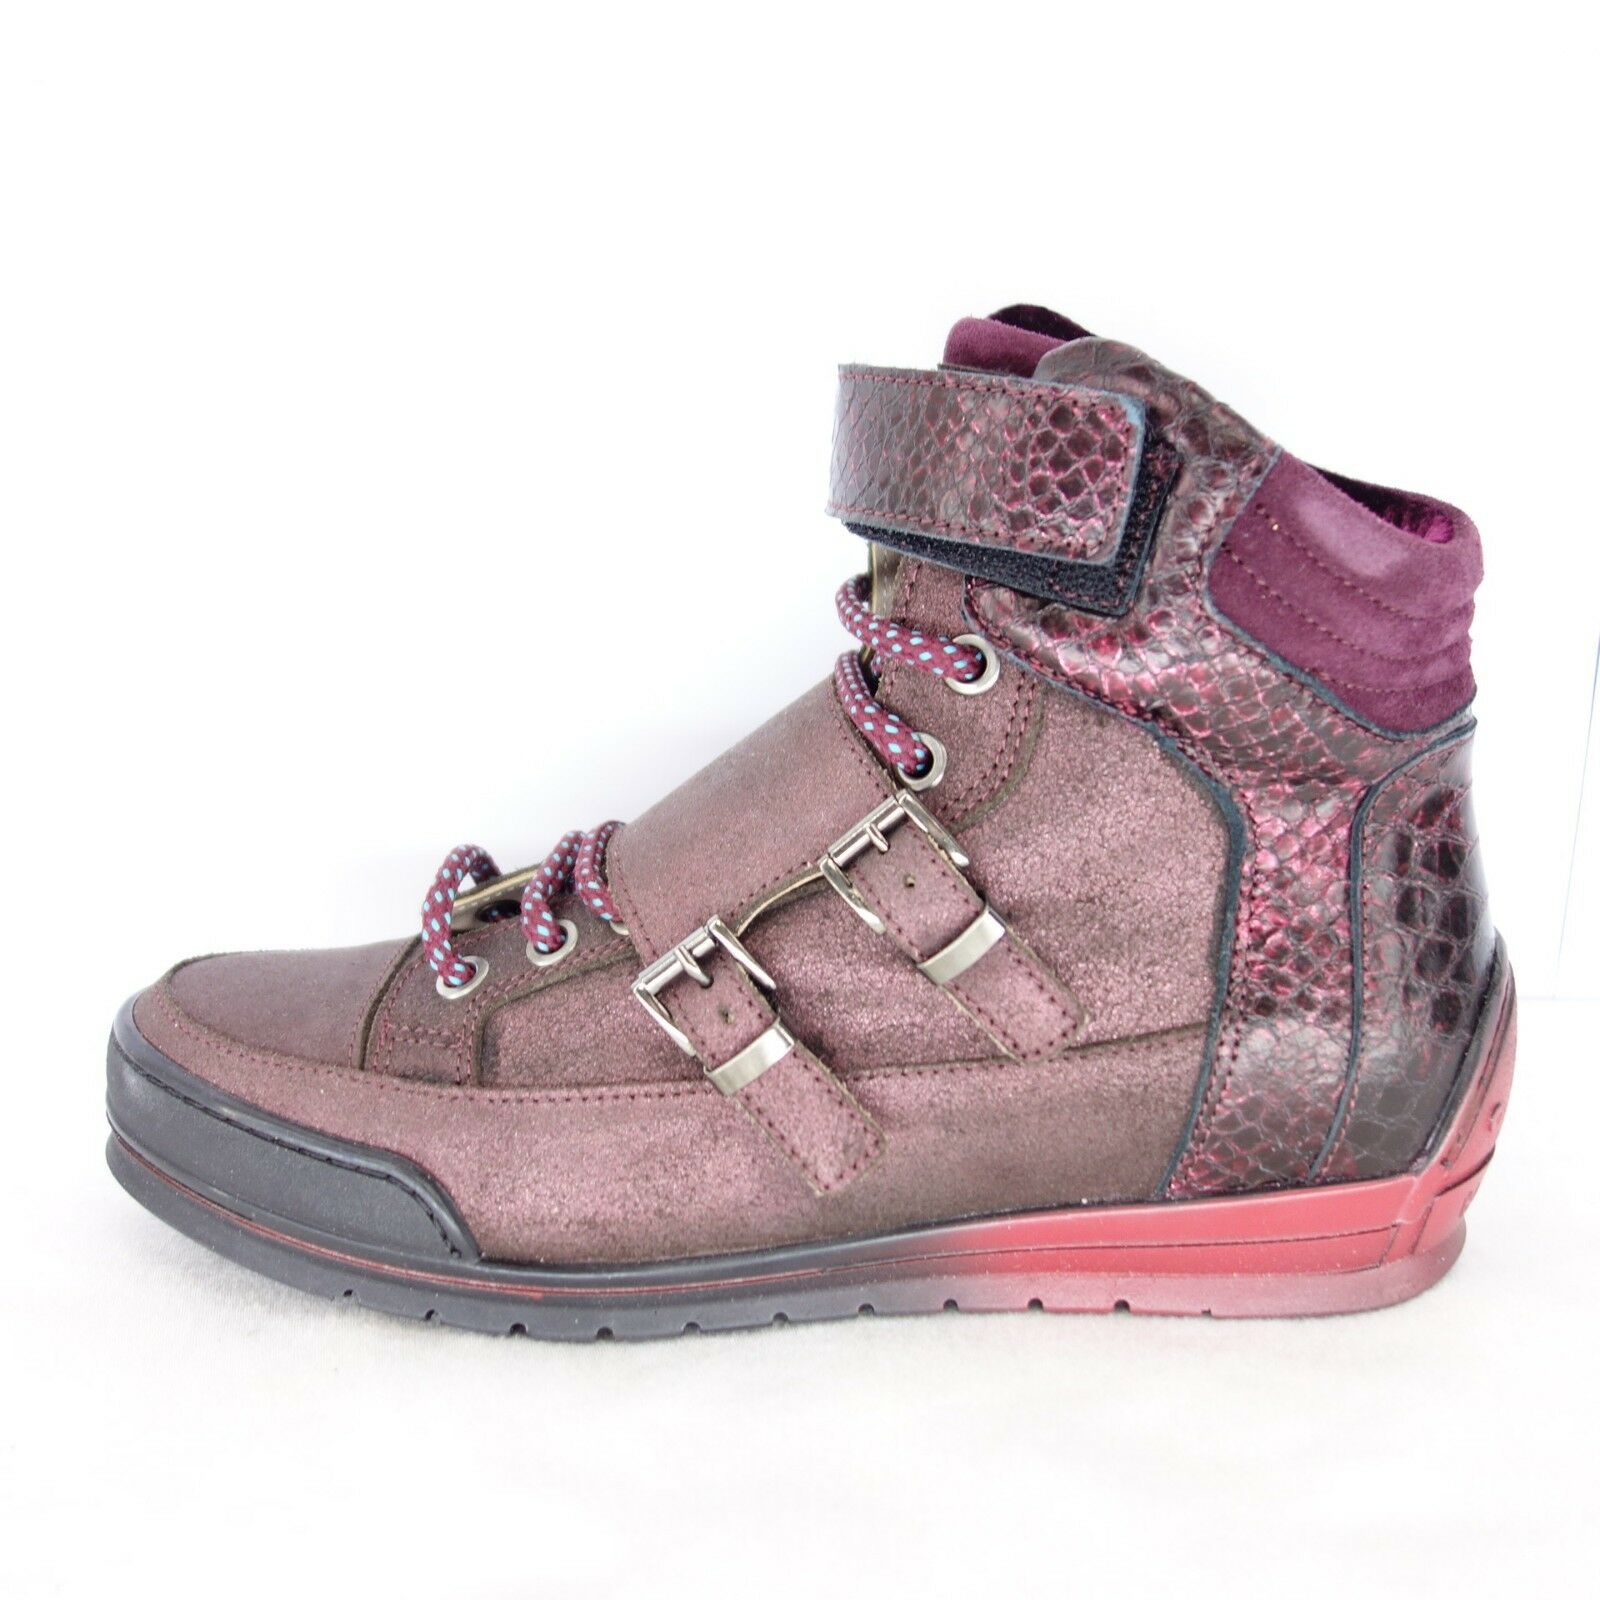 Candice Cooper Damen Sneaker Schuhe Gr 36 Rot Leder High Top Zipper Np 189 Neu